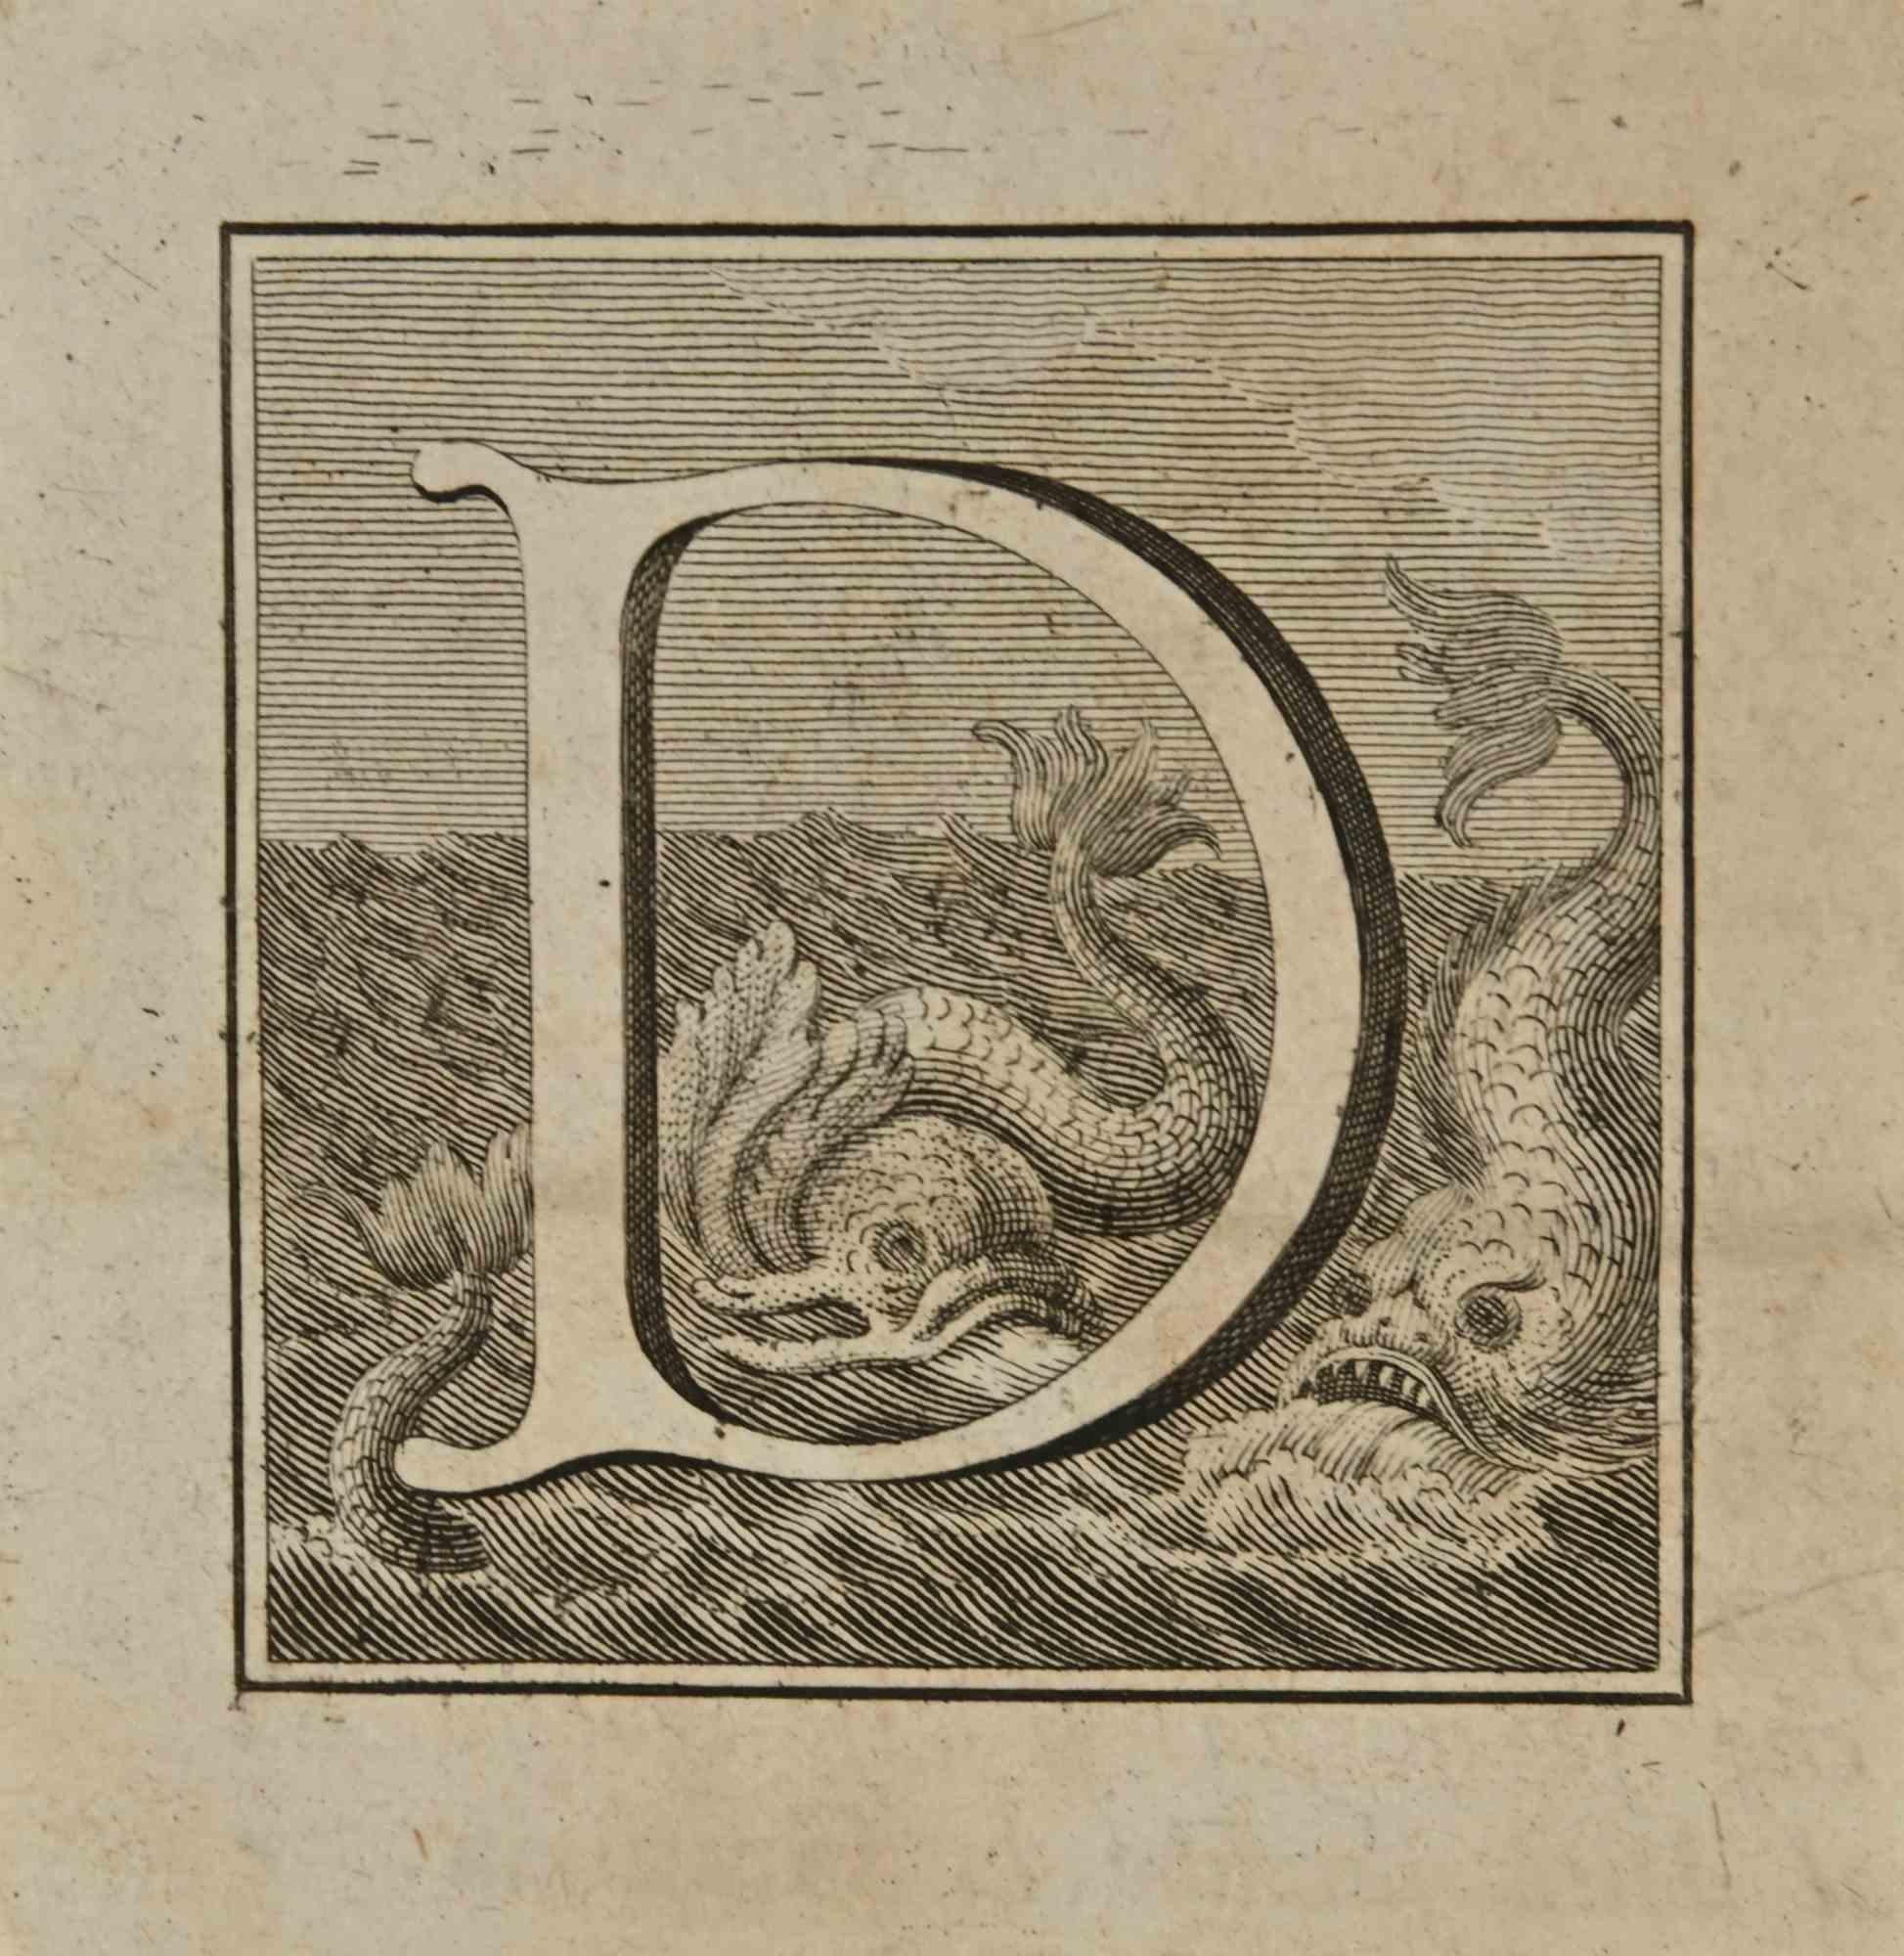 Lettre de l'alphabet D,  de la série "Antiquités d'Herculanum", est une gravure sur papier réalisée par Luigi Vanvitelli au 18ème siècle.

Bon état avec des pliures.

La gravure appartient à la suite d'estampes "Antiquités d'Herculanum exposées"